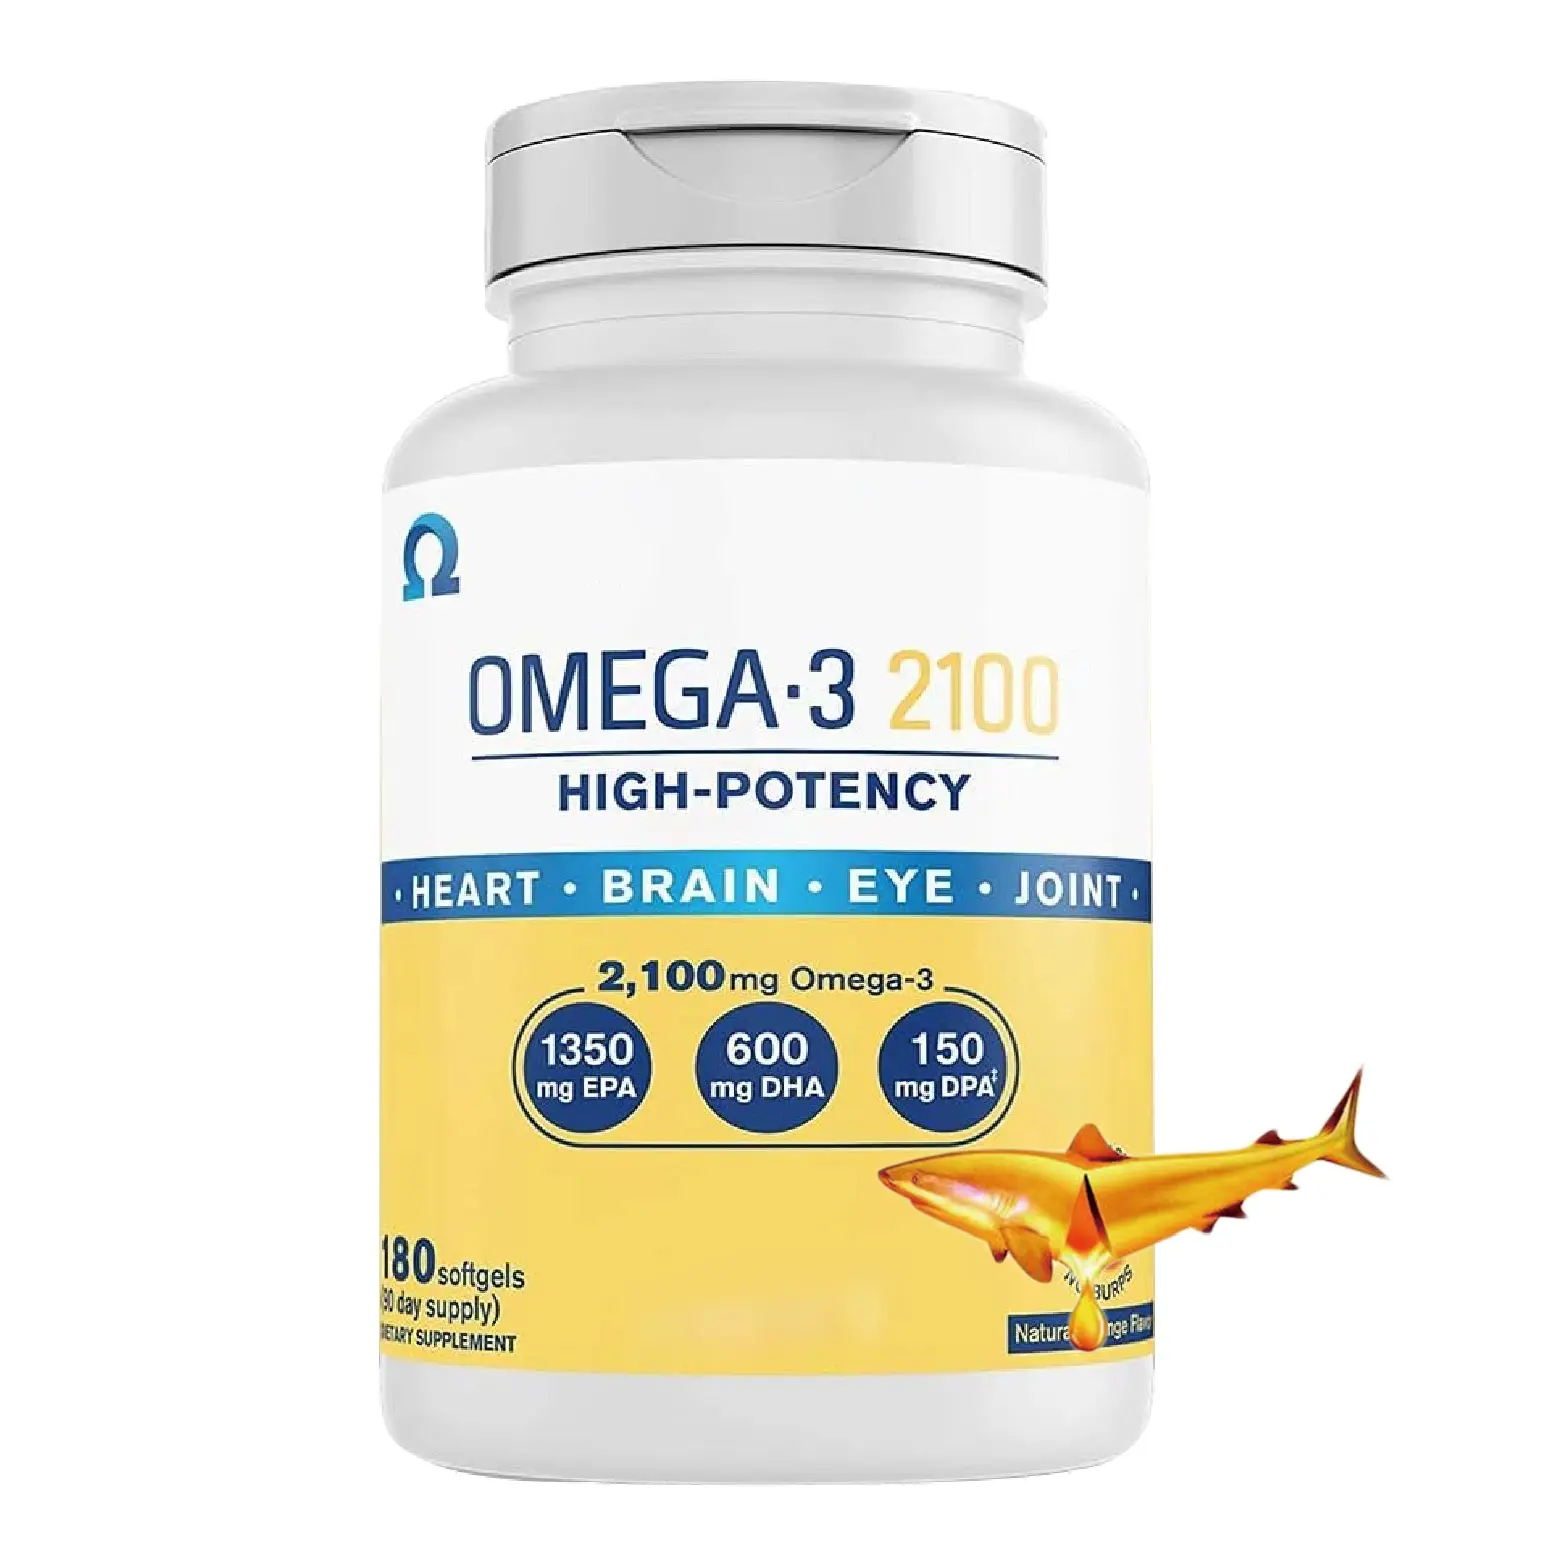 Private Label fish oil omega 3 softgel capsules EPA DHA fish oil omega 3 1200mg eye brain heart